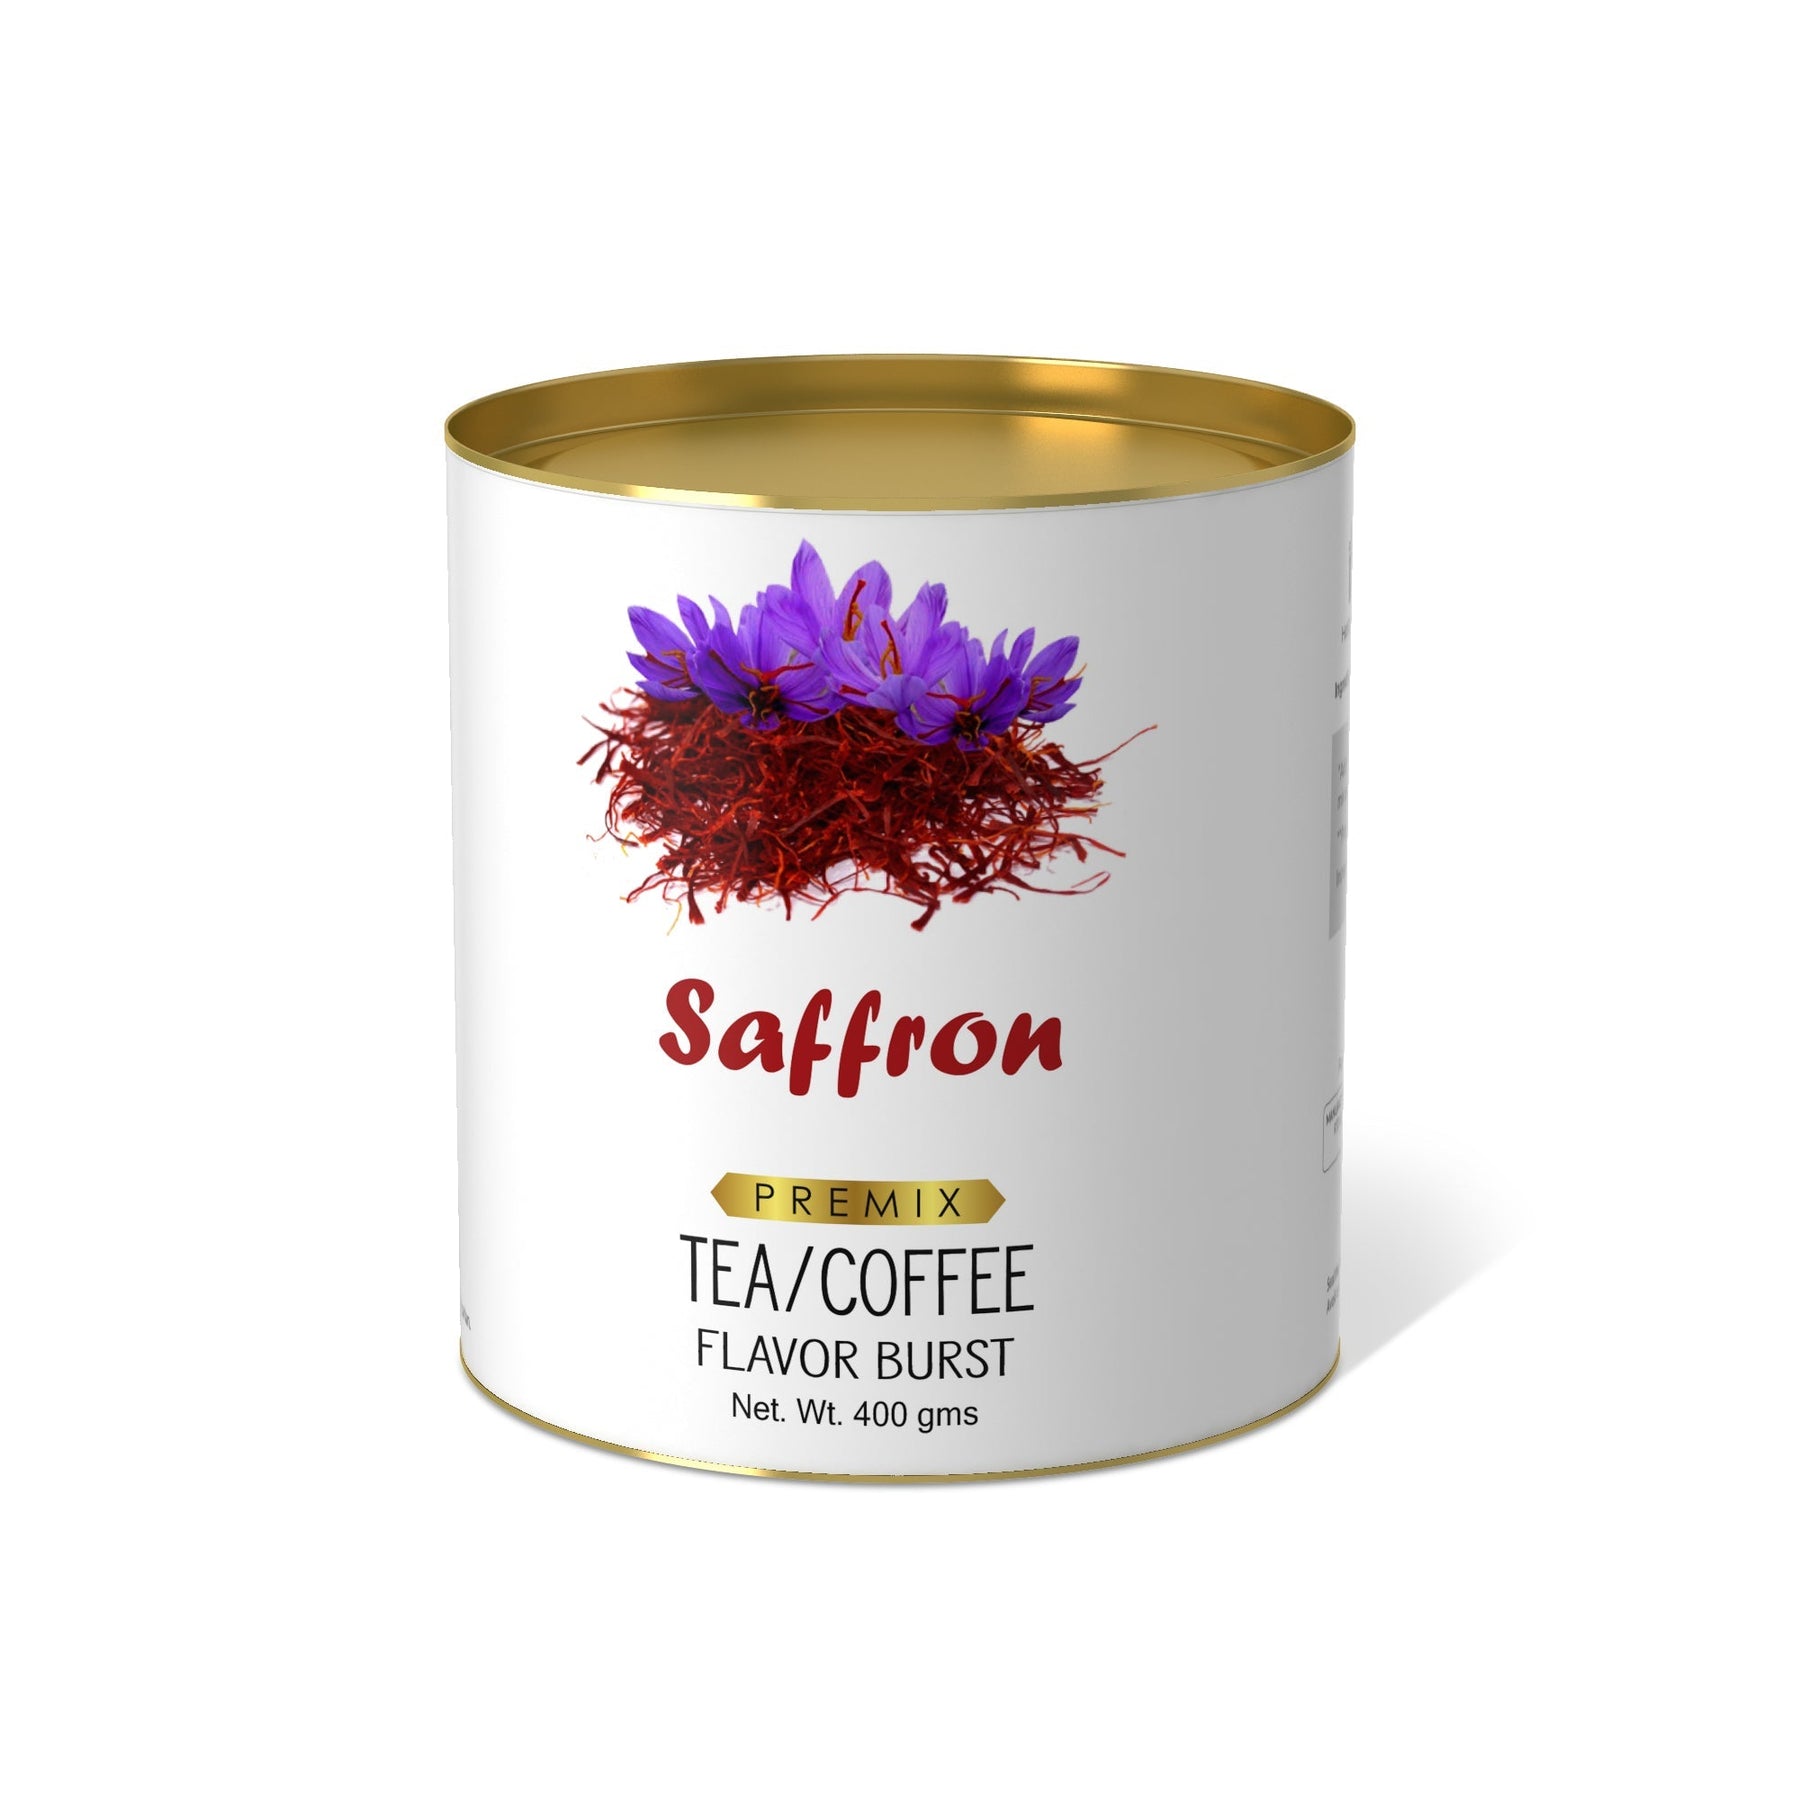 Saffron Flavor Burst - 400 gms